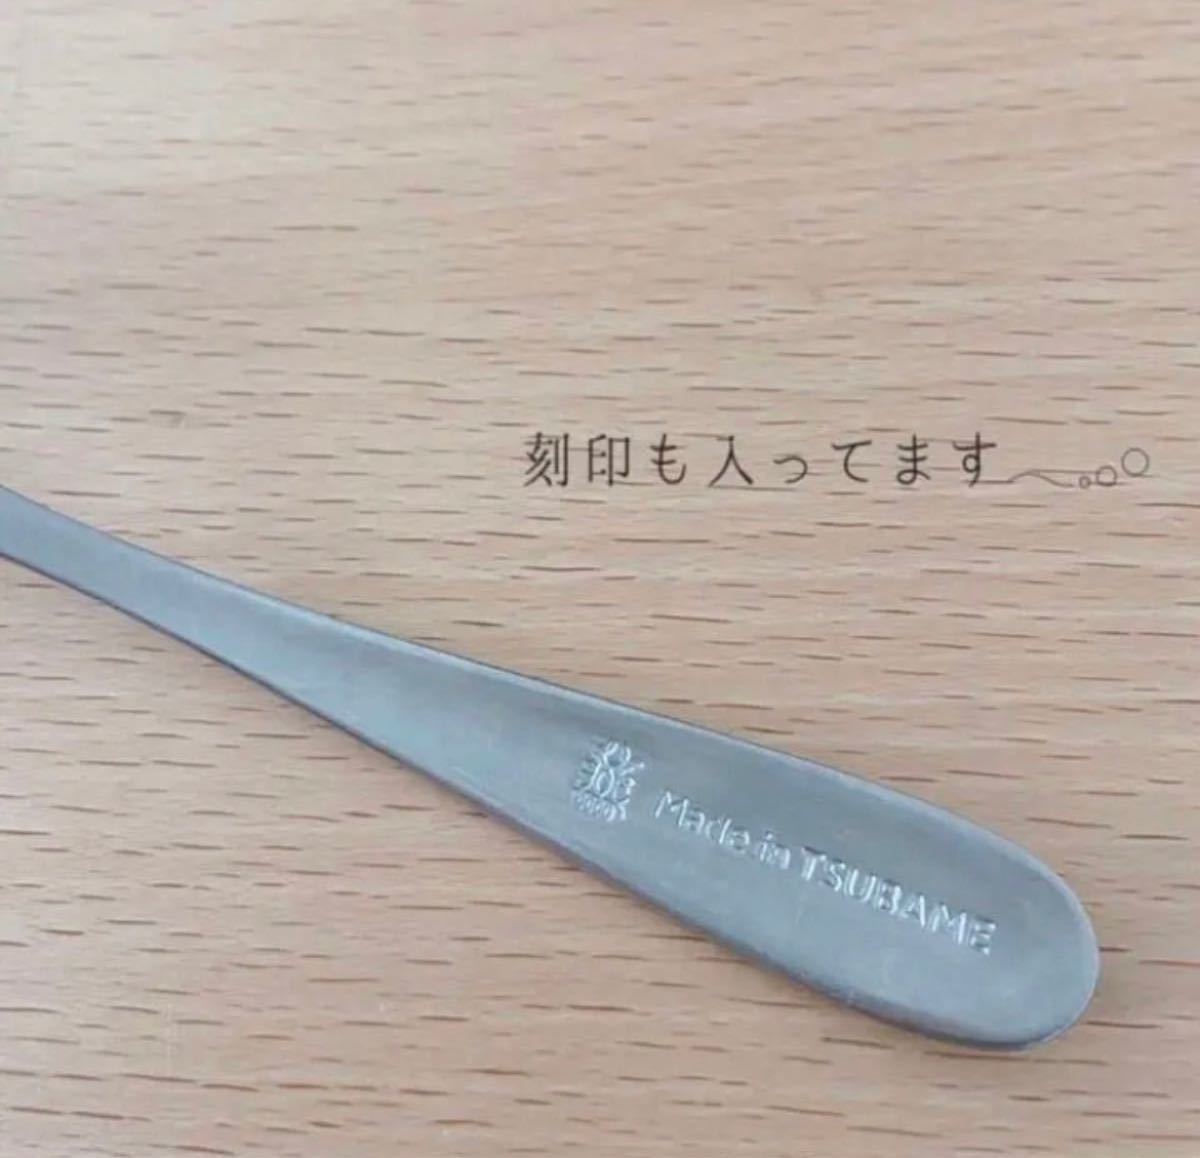 【数量限定】ツバメ 燕 tsubame カトラリー ナイフ　made in Tsubame 14本 セット 大人気